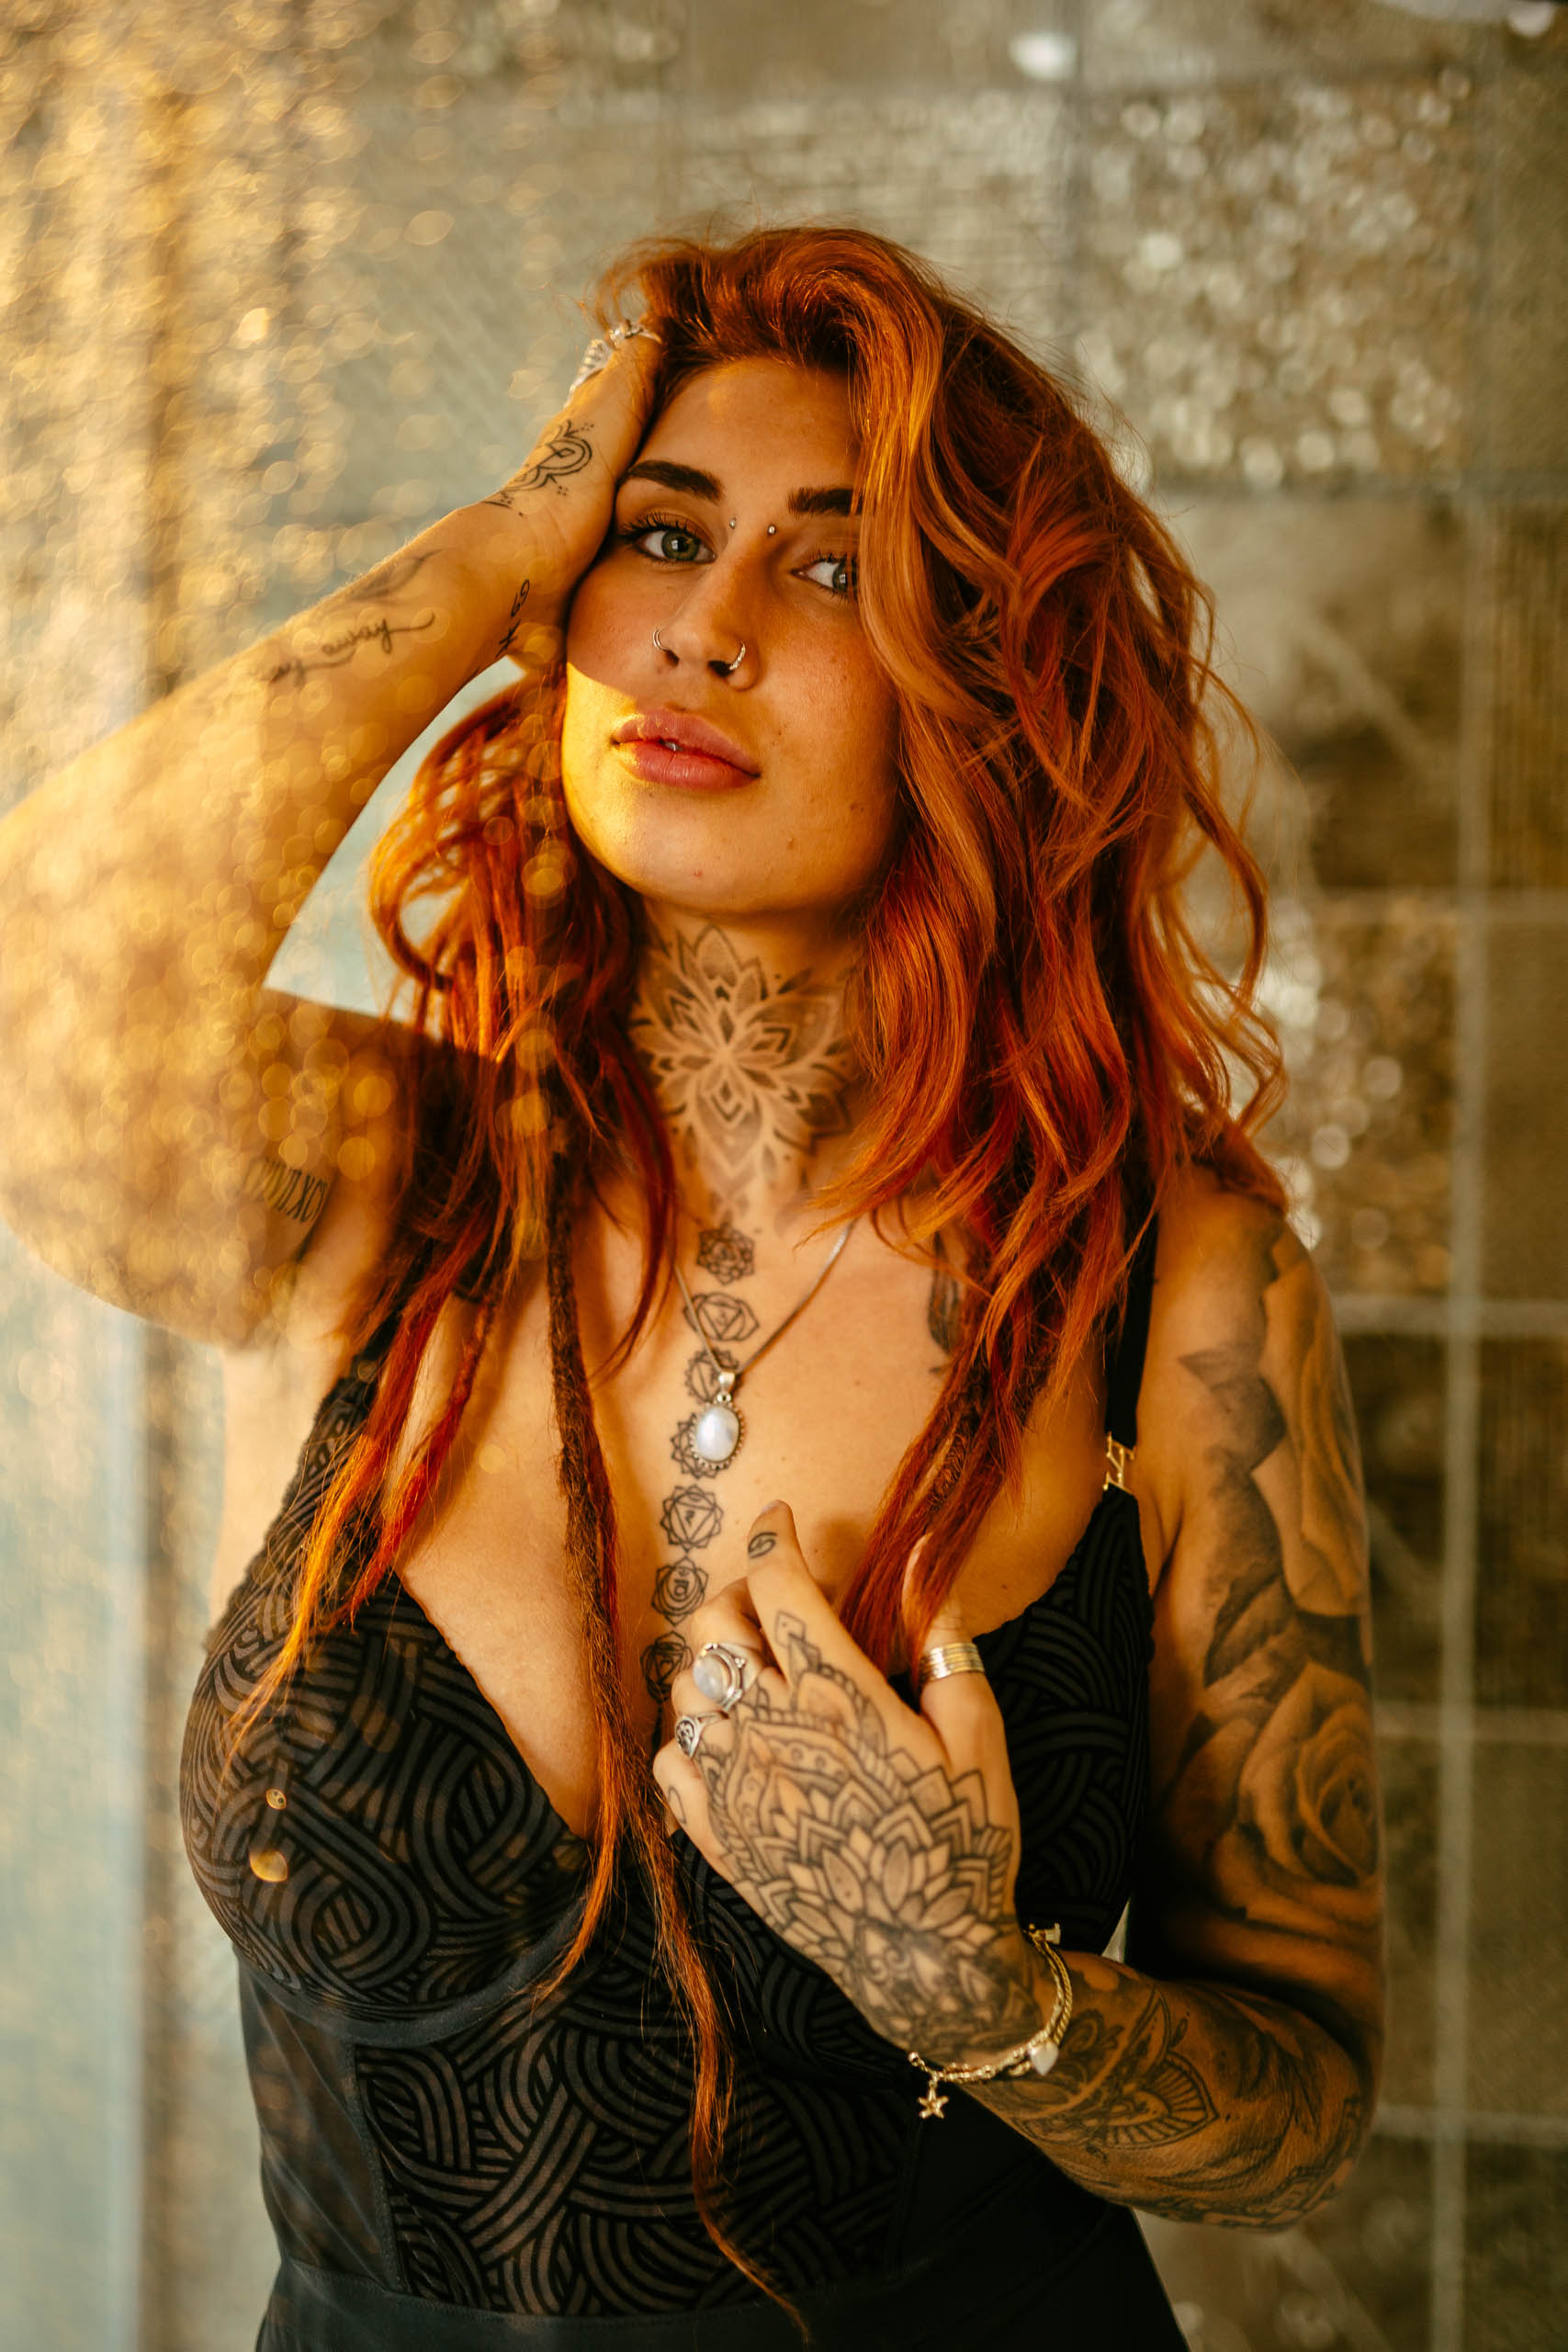 Een vrouw met rood haar en tatoeages poserend in een badkamer.